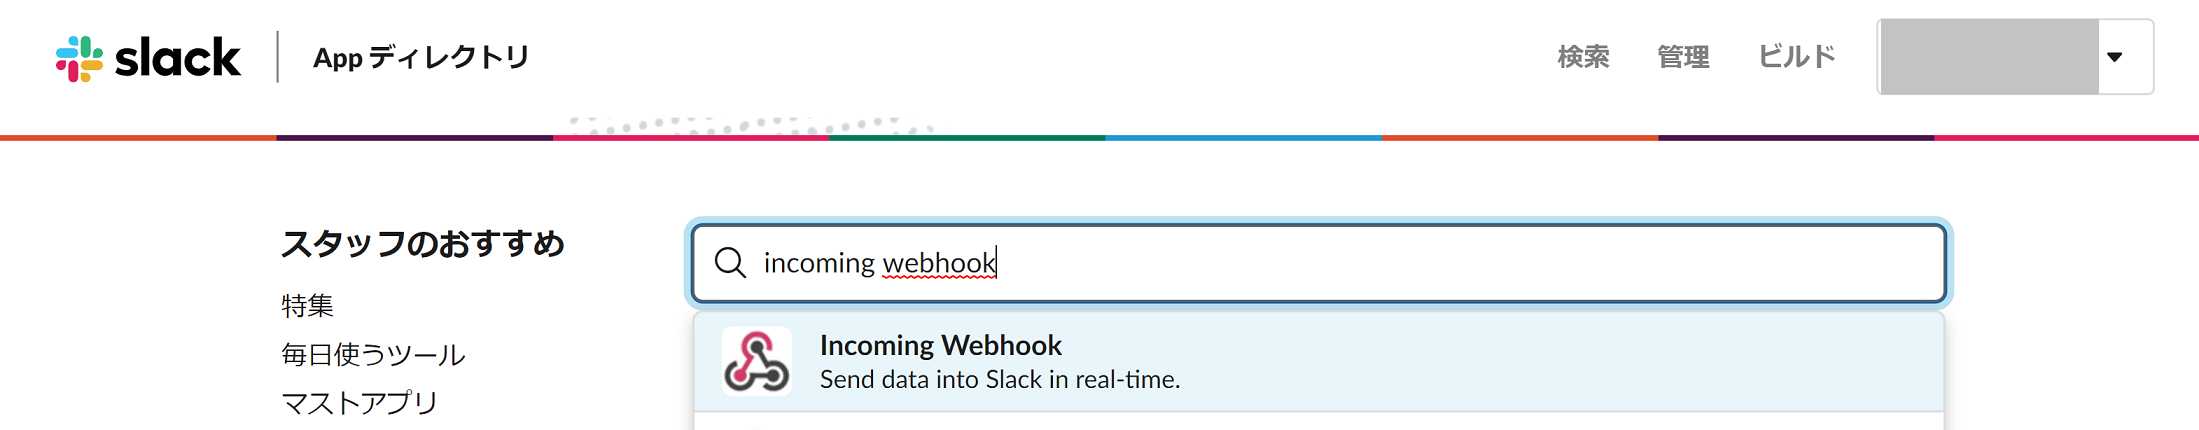 webhook_slack_20200219_01.png